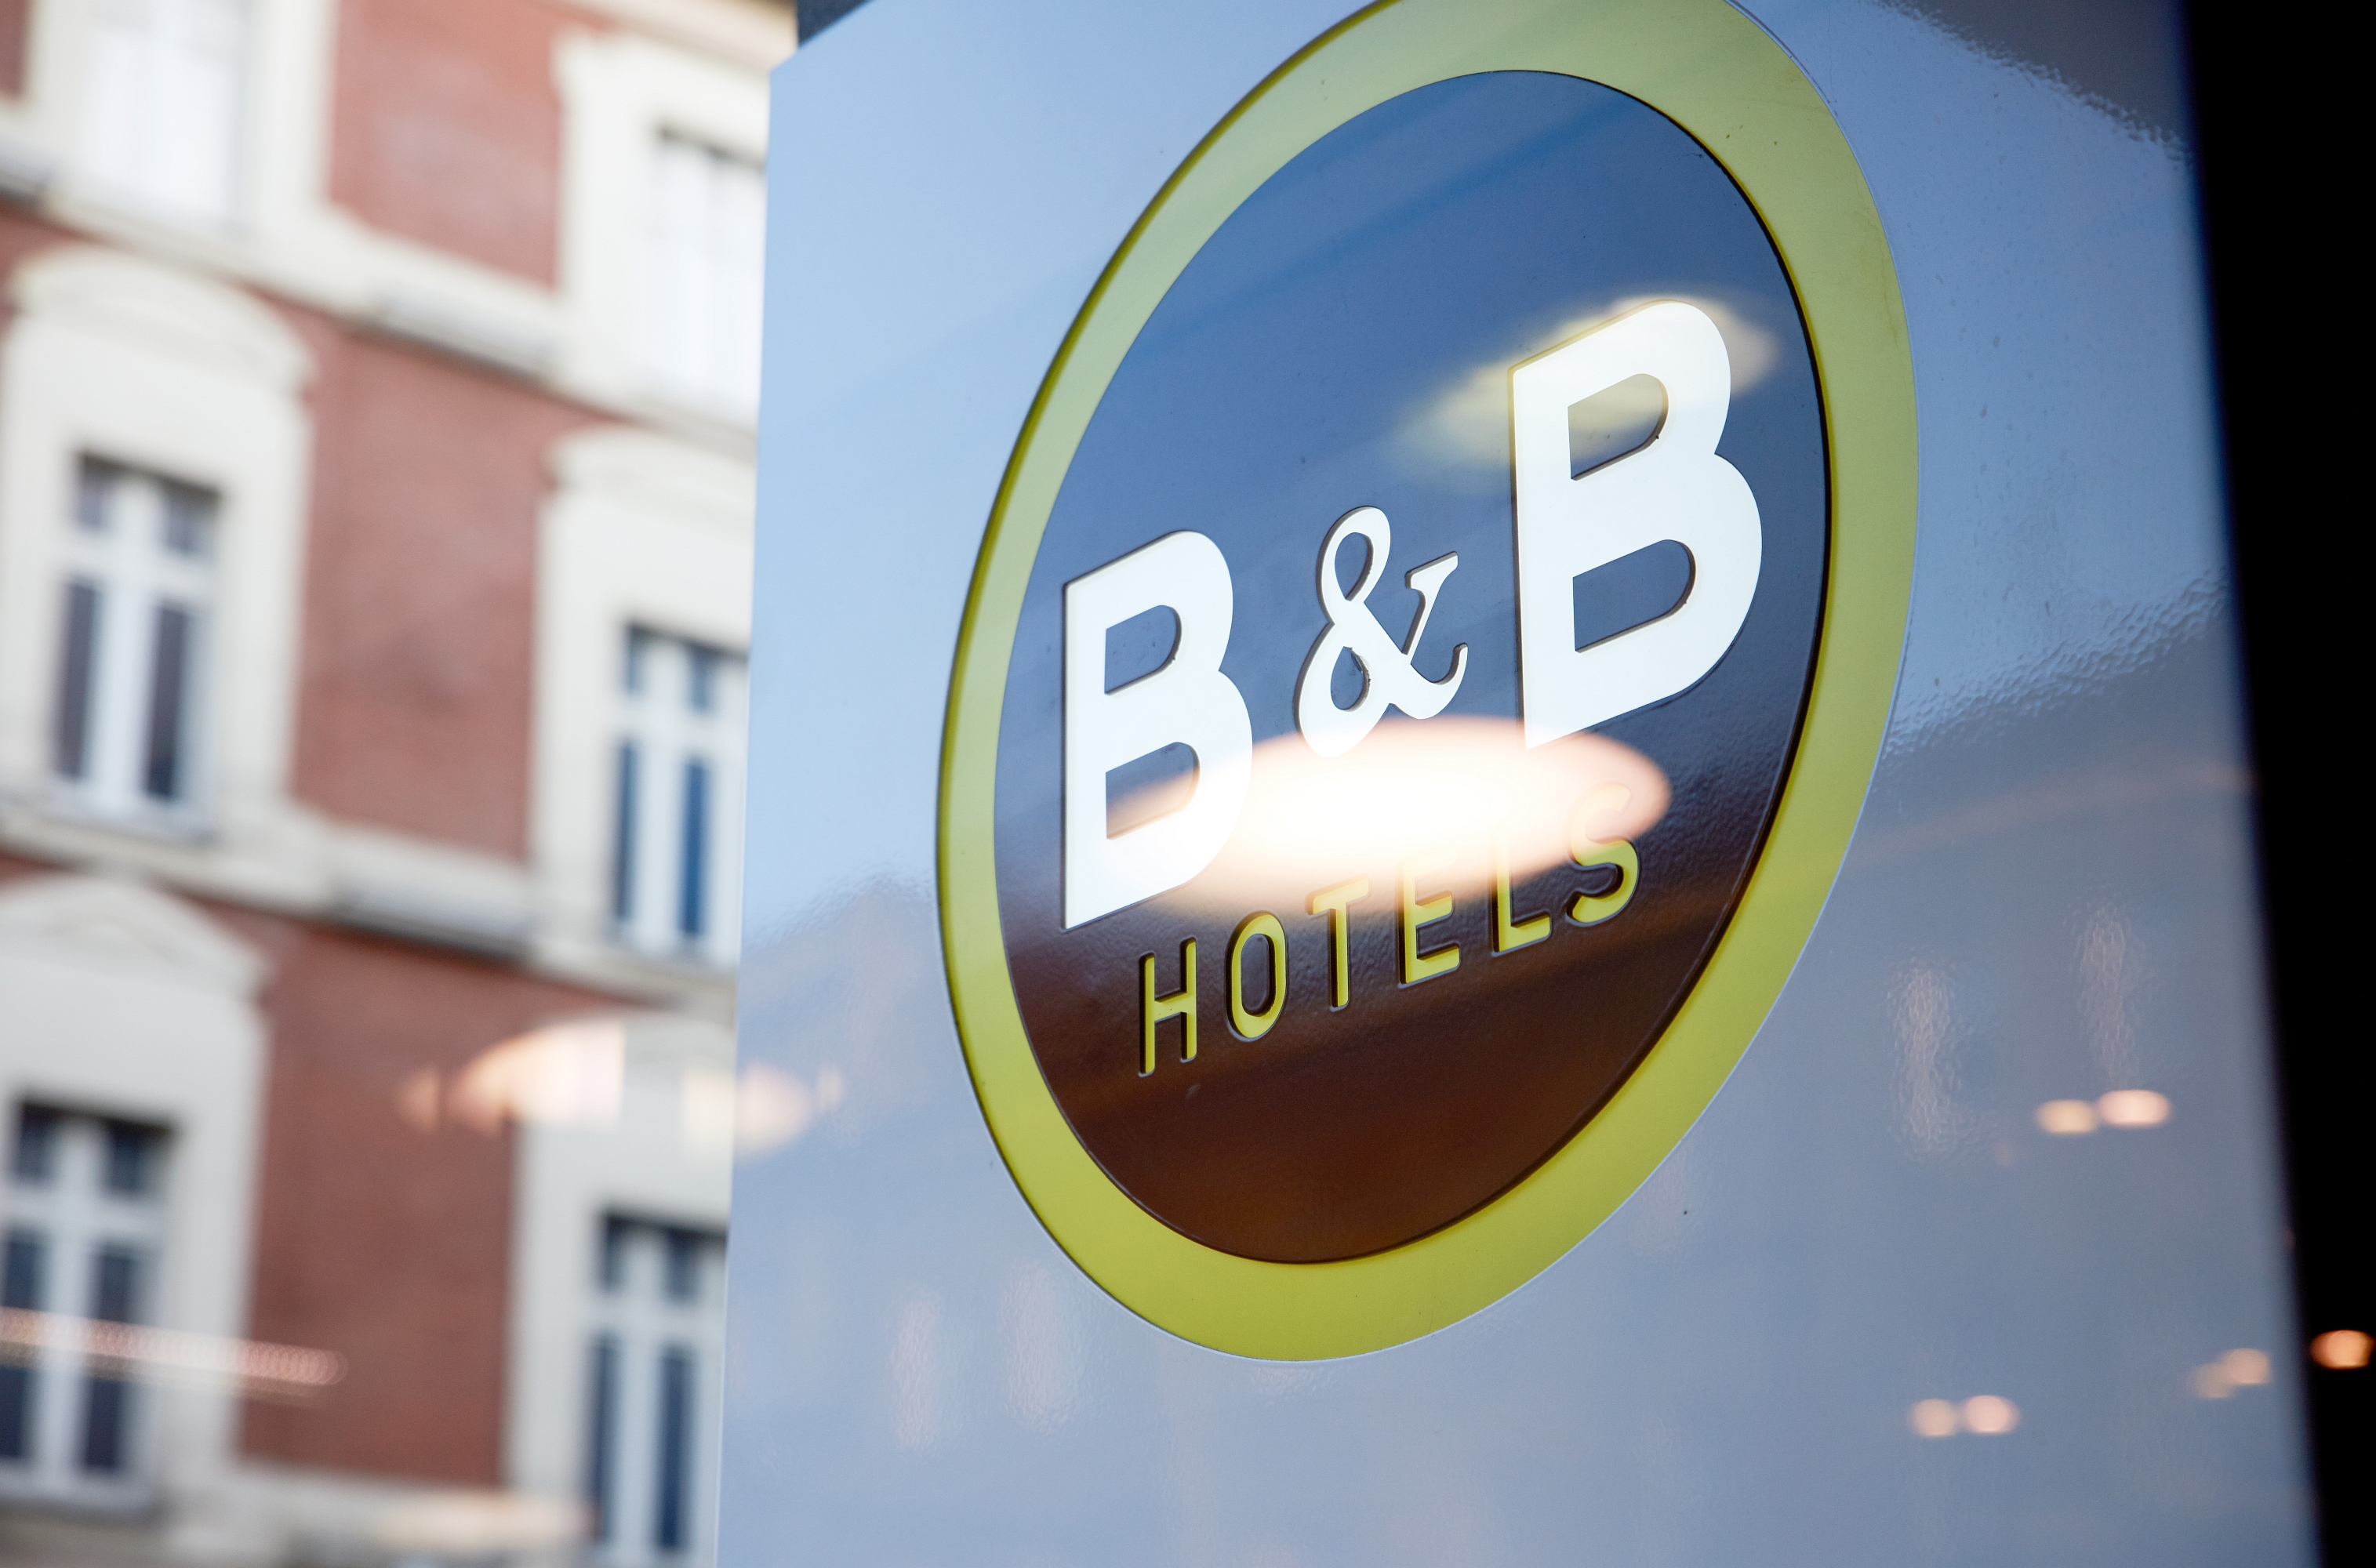 B&B Hotels wkrótce w Kielcach